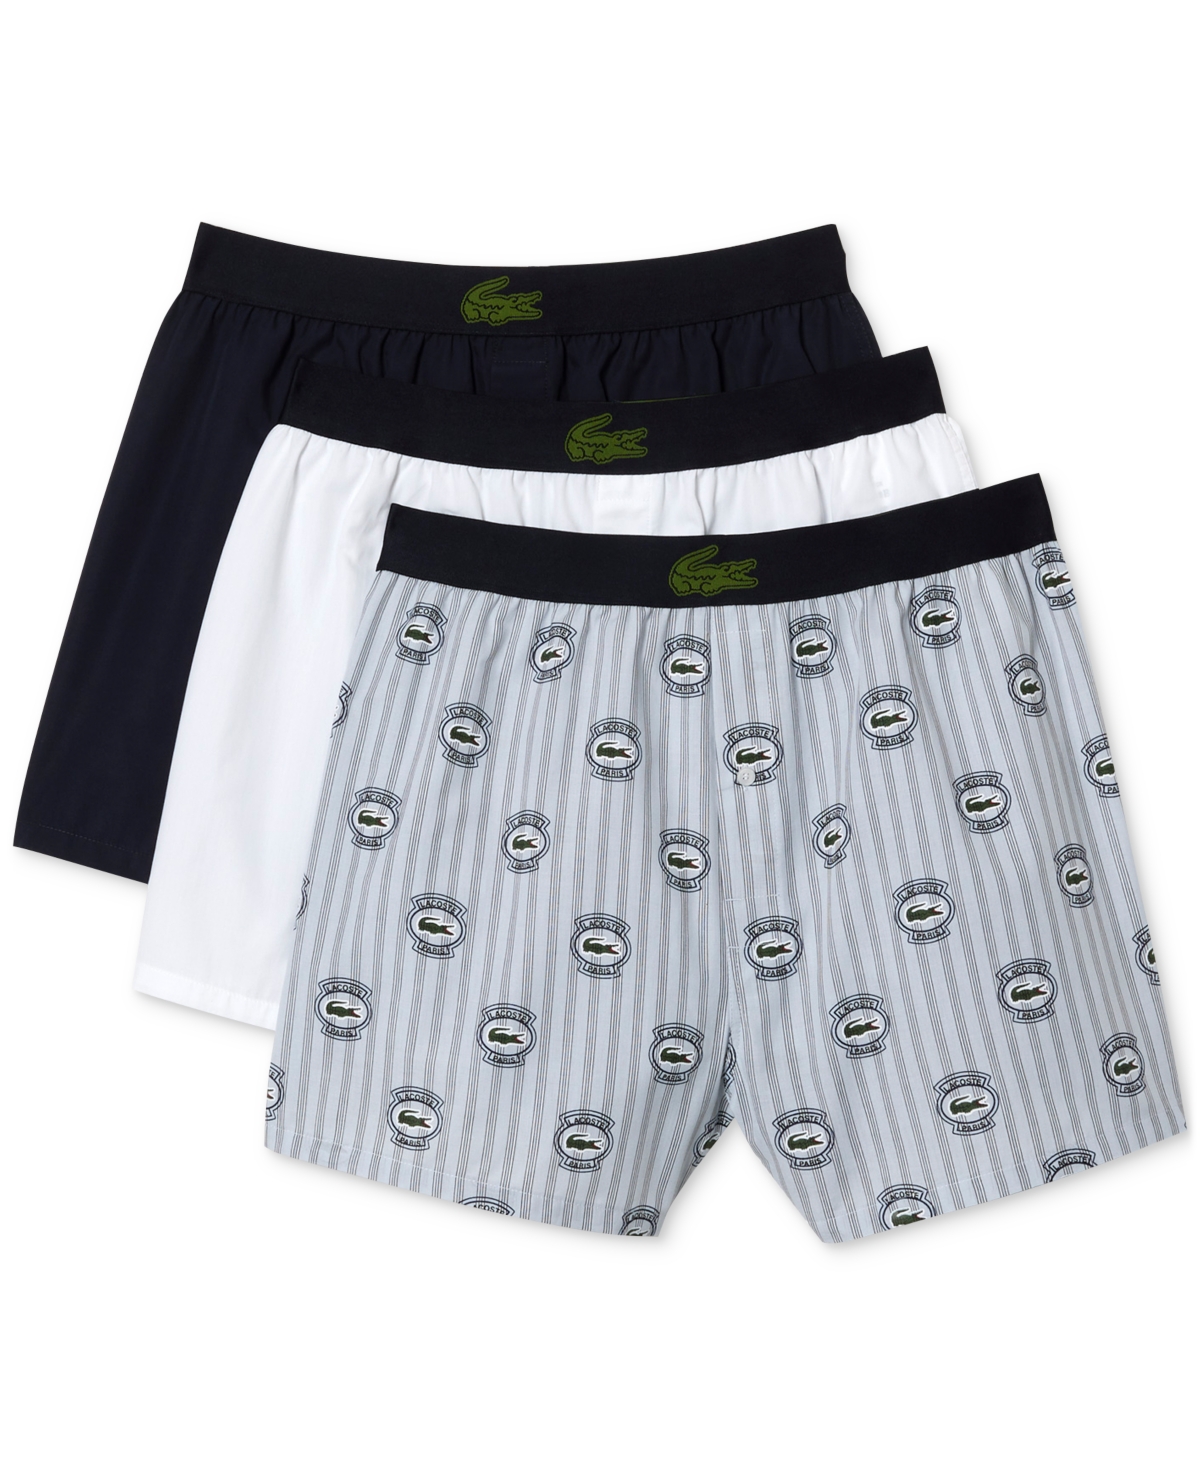 Lacoste Men's Boxer Underwear, Pack Of 3 In Inx Phoeni